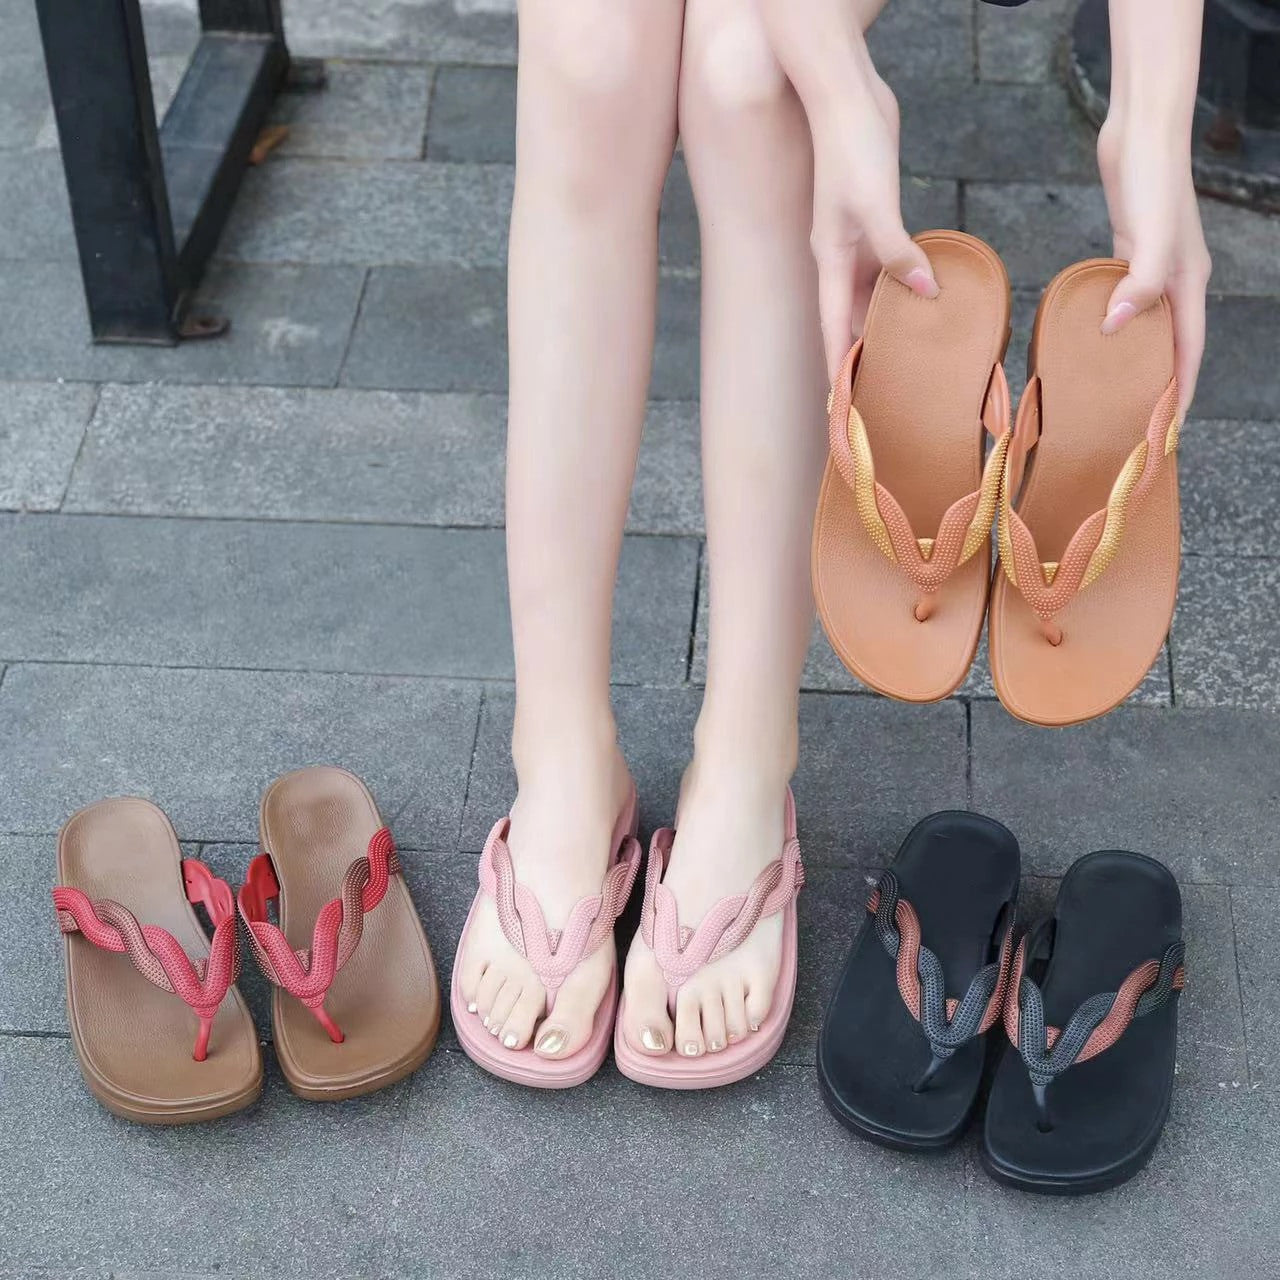 OCW Anti-slip Sandals For Women Braided Straps Trendy Flip-flops